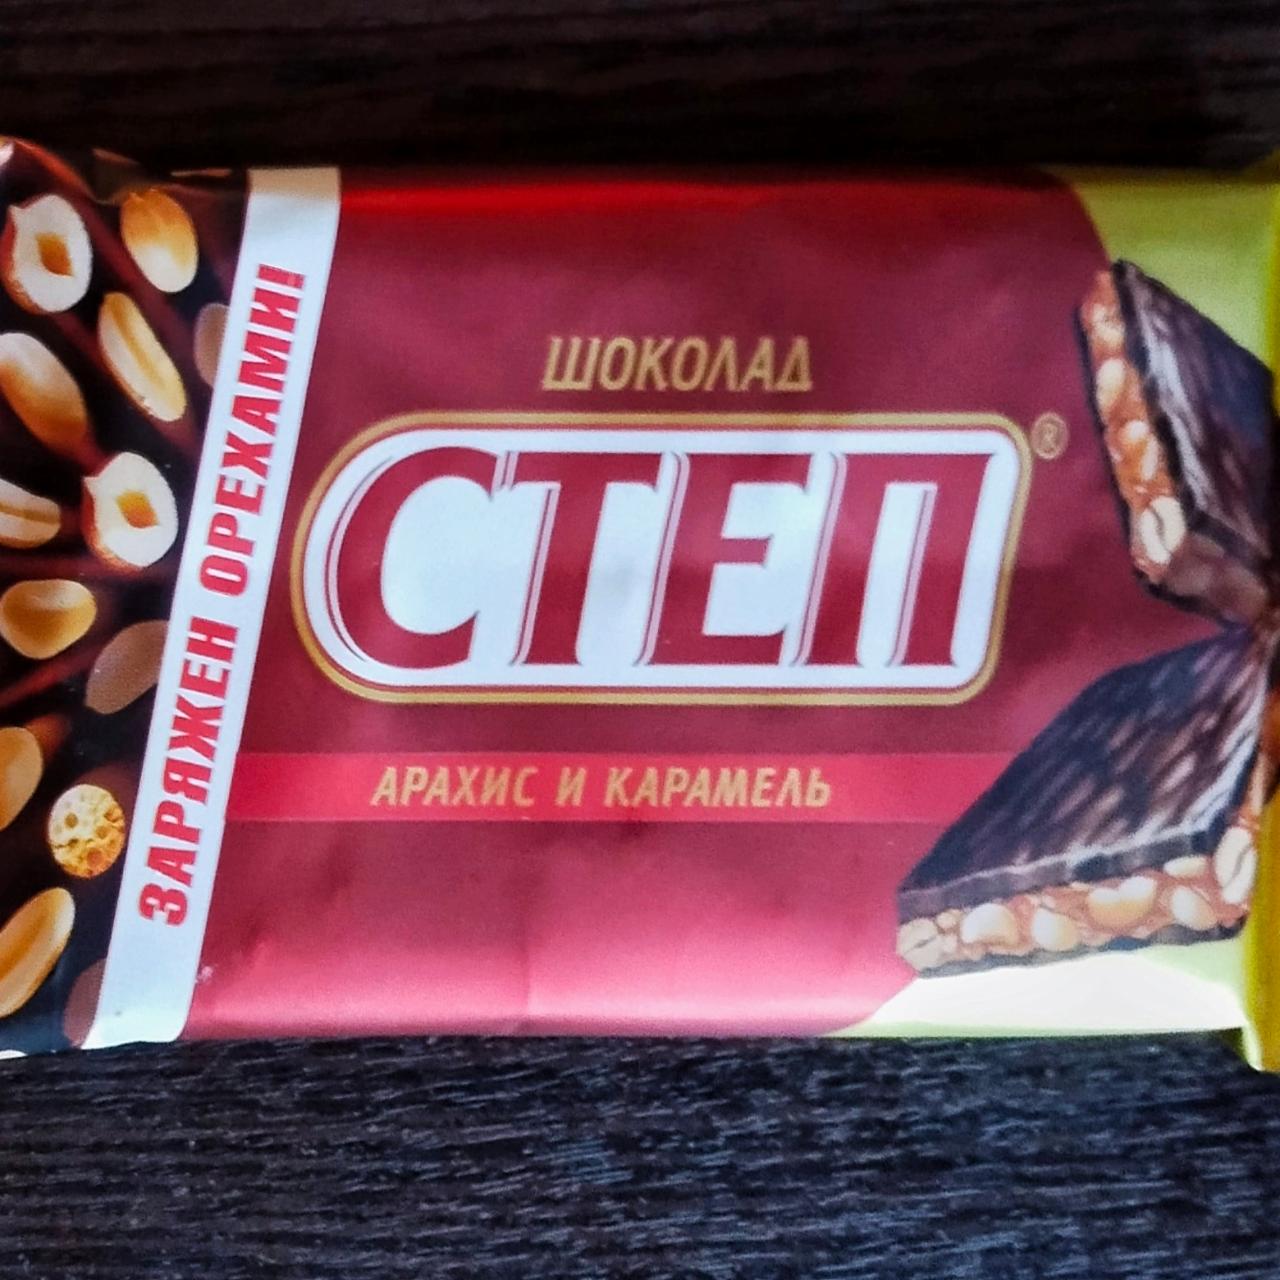 Фото - Молочный шоколад с начинкой арахис и карамель славянка Степ Славянка